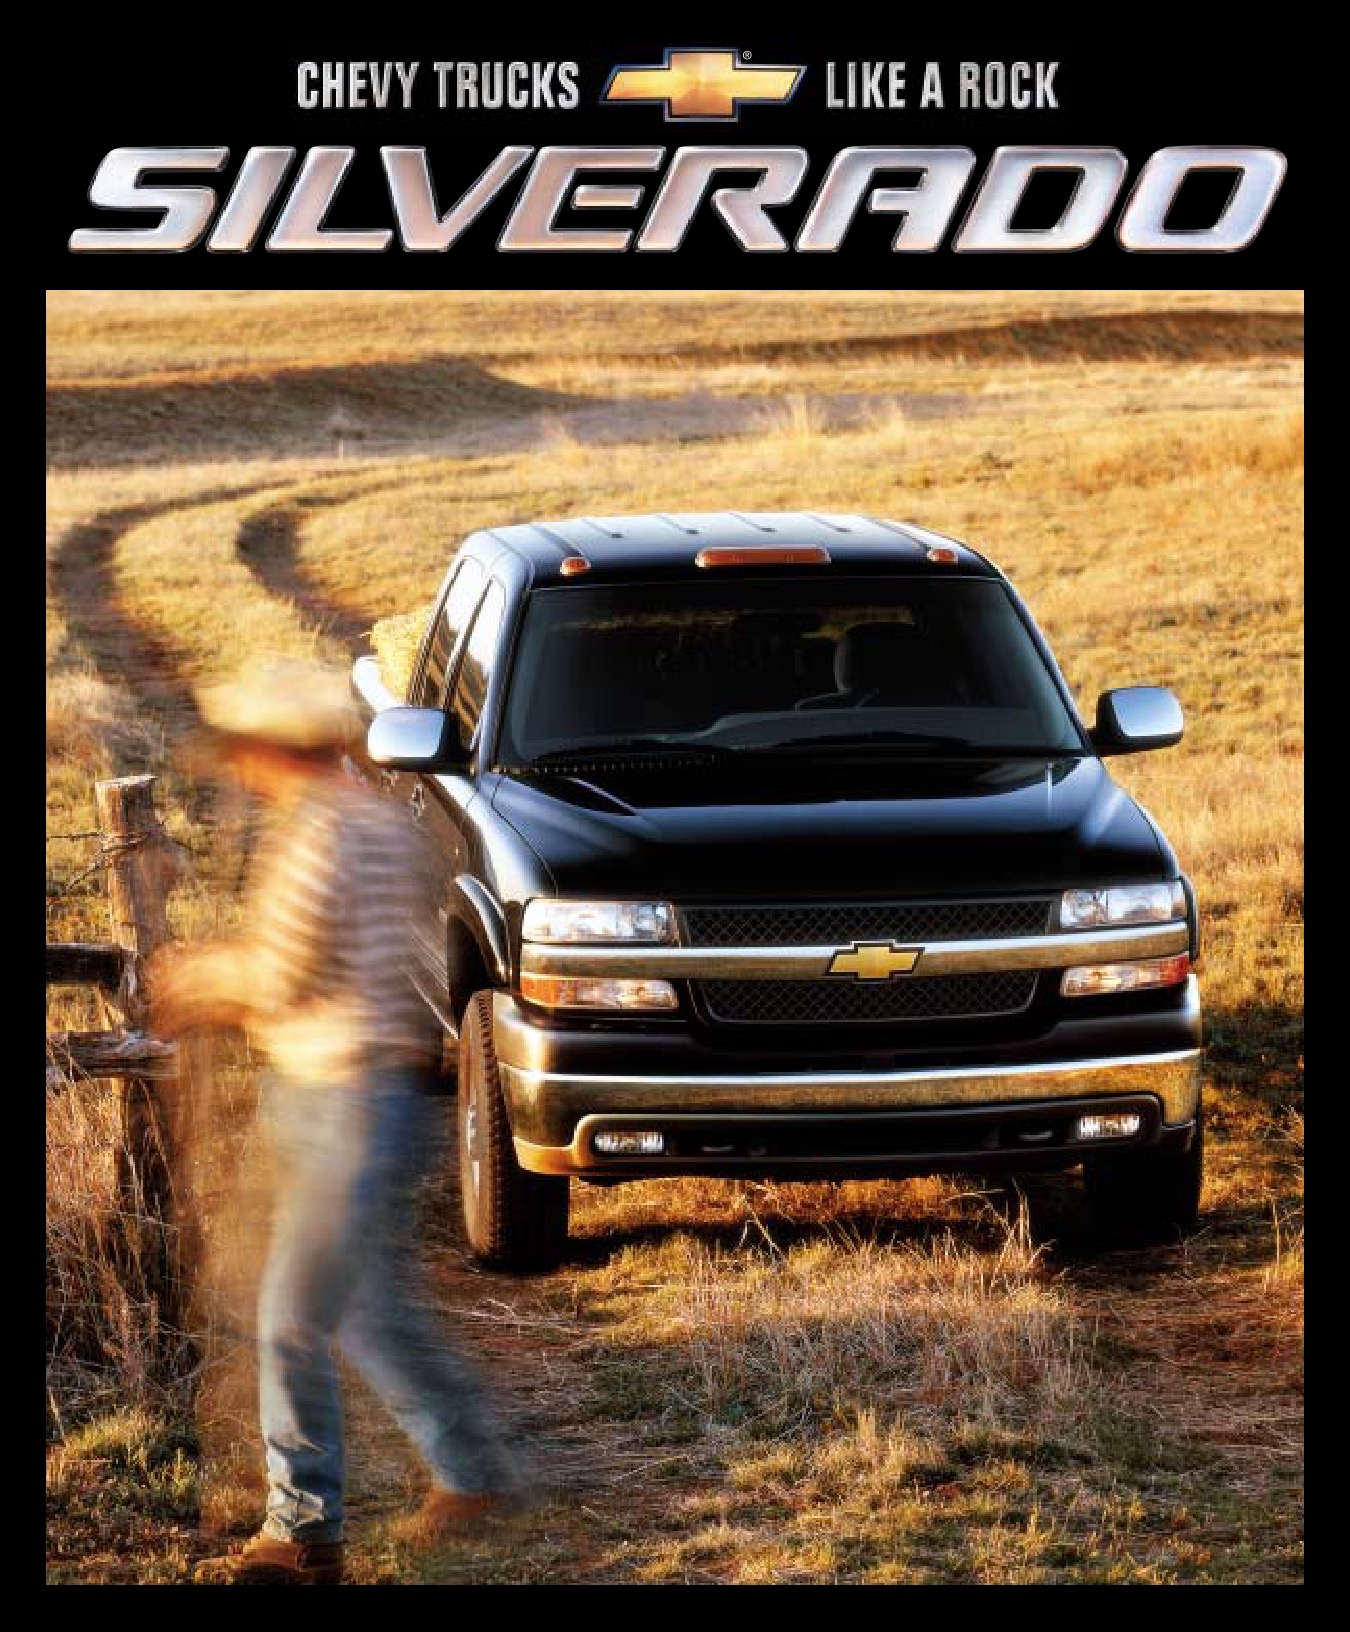 2002 Chevrolet Silverado Brochure